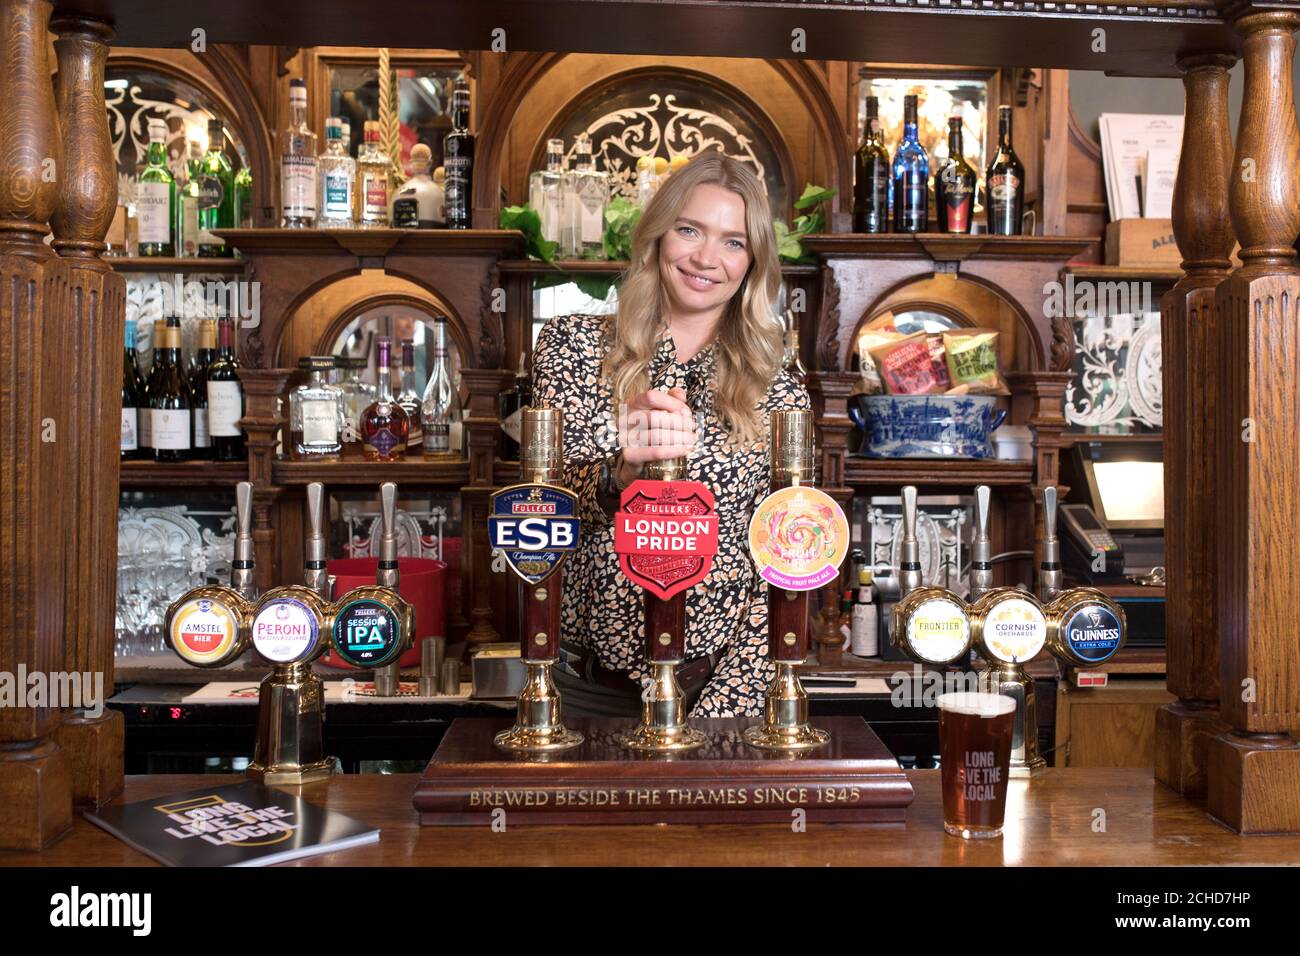 NUR FÜR REDAKTIONELLE VERWENDUNG Jodie Kidd kündigt Ã’Long Live the LocalÃ“ an, eine landesweite Kampagne, die von der BritainÃ•'s Beer Alliance unterstützt wird und die Regierung auffordert, die verheerend hohen Biersteuern zu senken, um britische Pubs offen zu halten. ChancellorÃ• Stockfoto